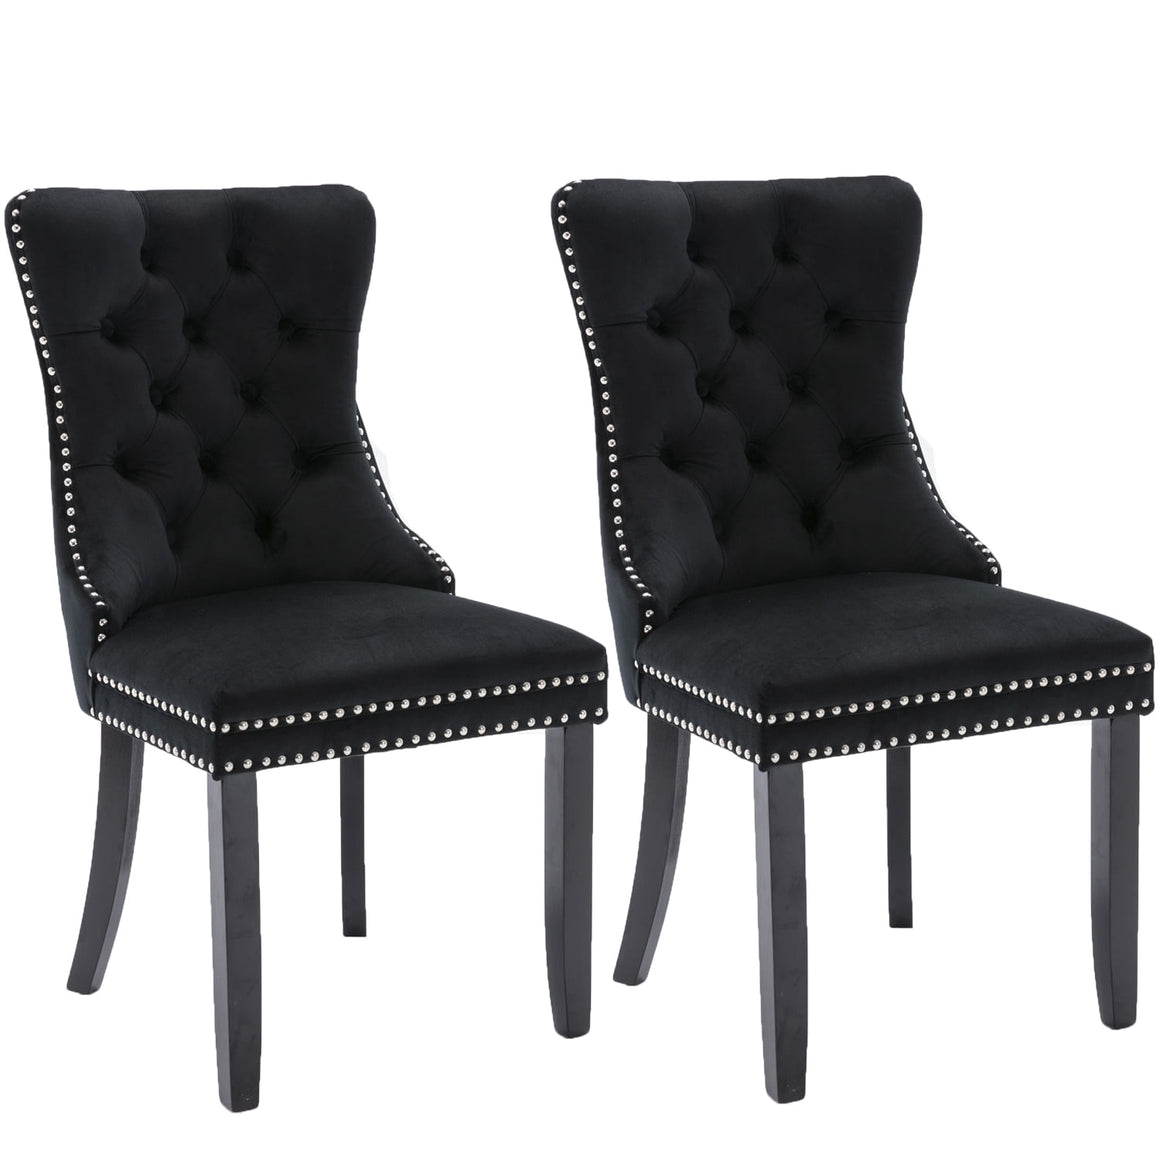 Black Tufted Velvet Upholstered Chair Set of 2 for Dining Room, Bedroom, Living Room